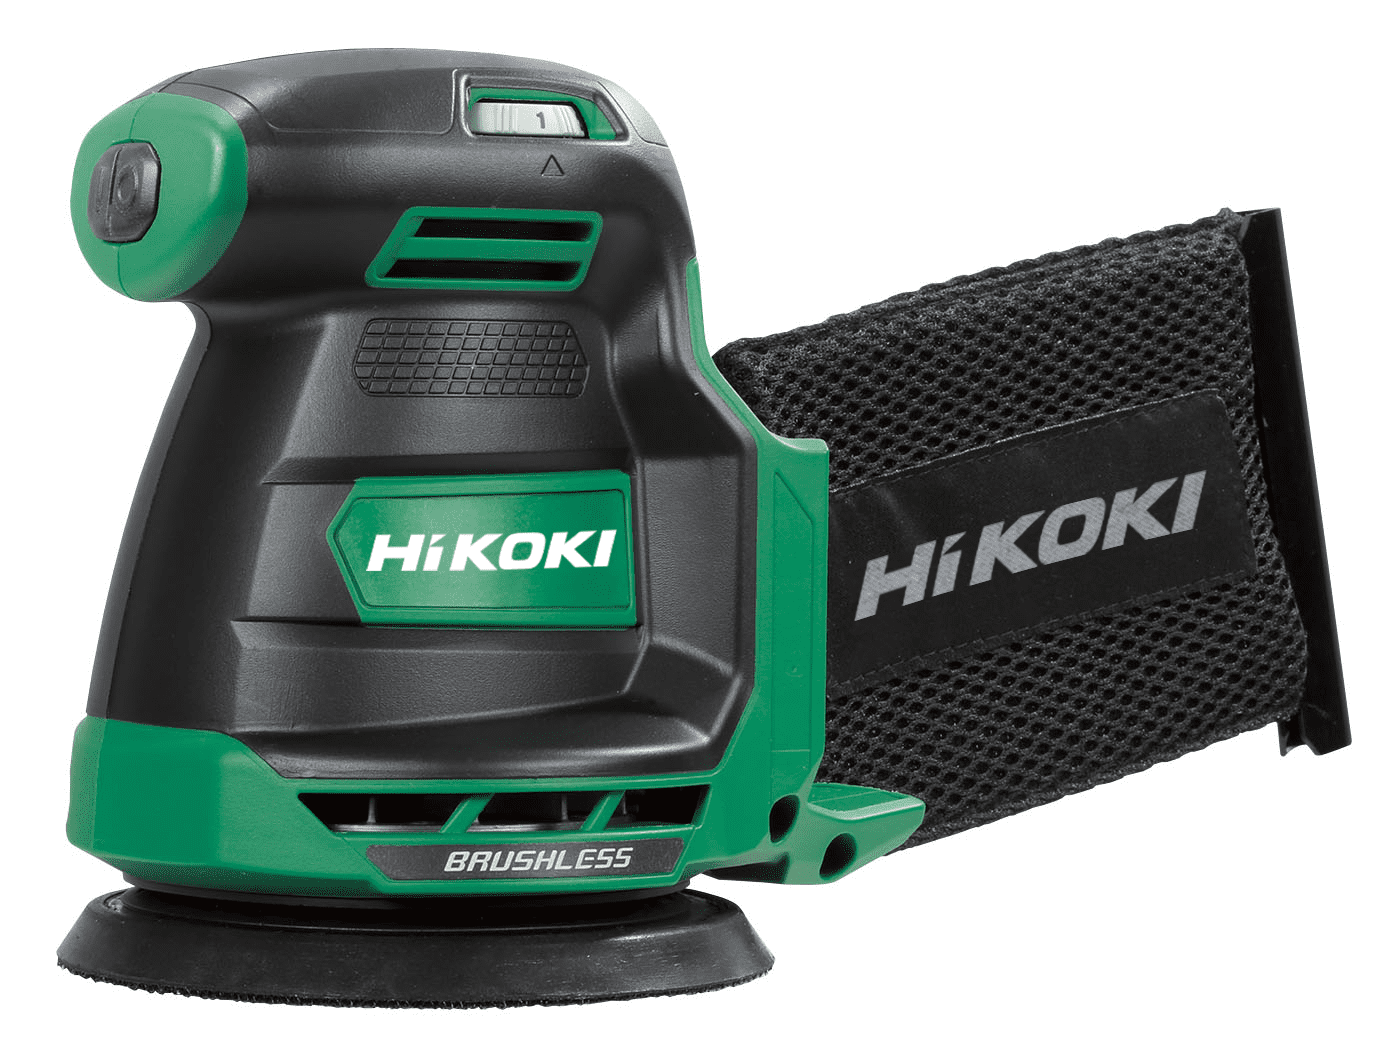 HiKOKI(ハイコーキ) 18V 充電式 ランダムサンダー 蓄電池・充電器